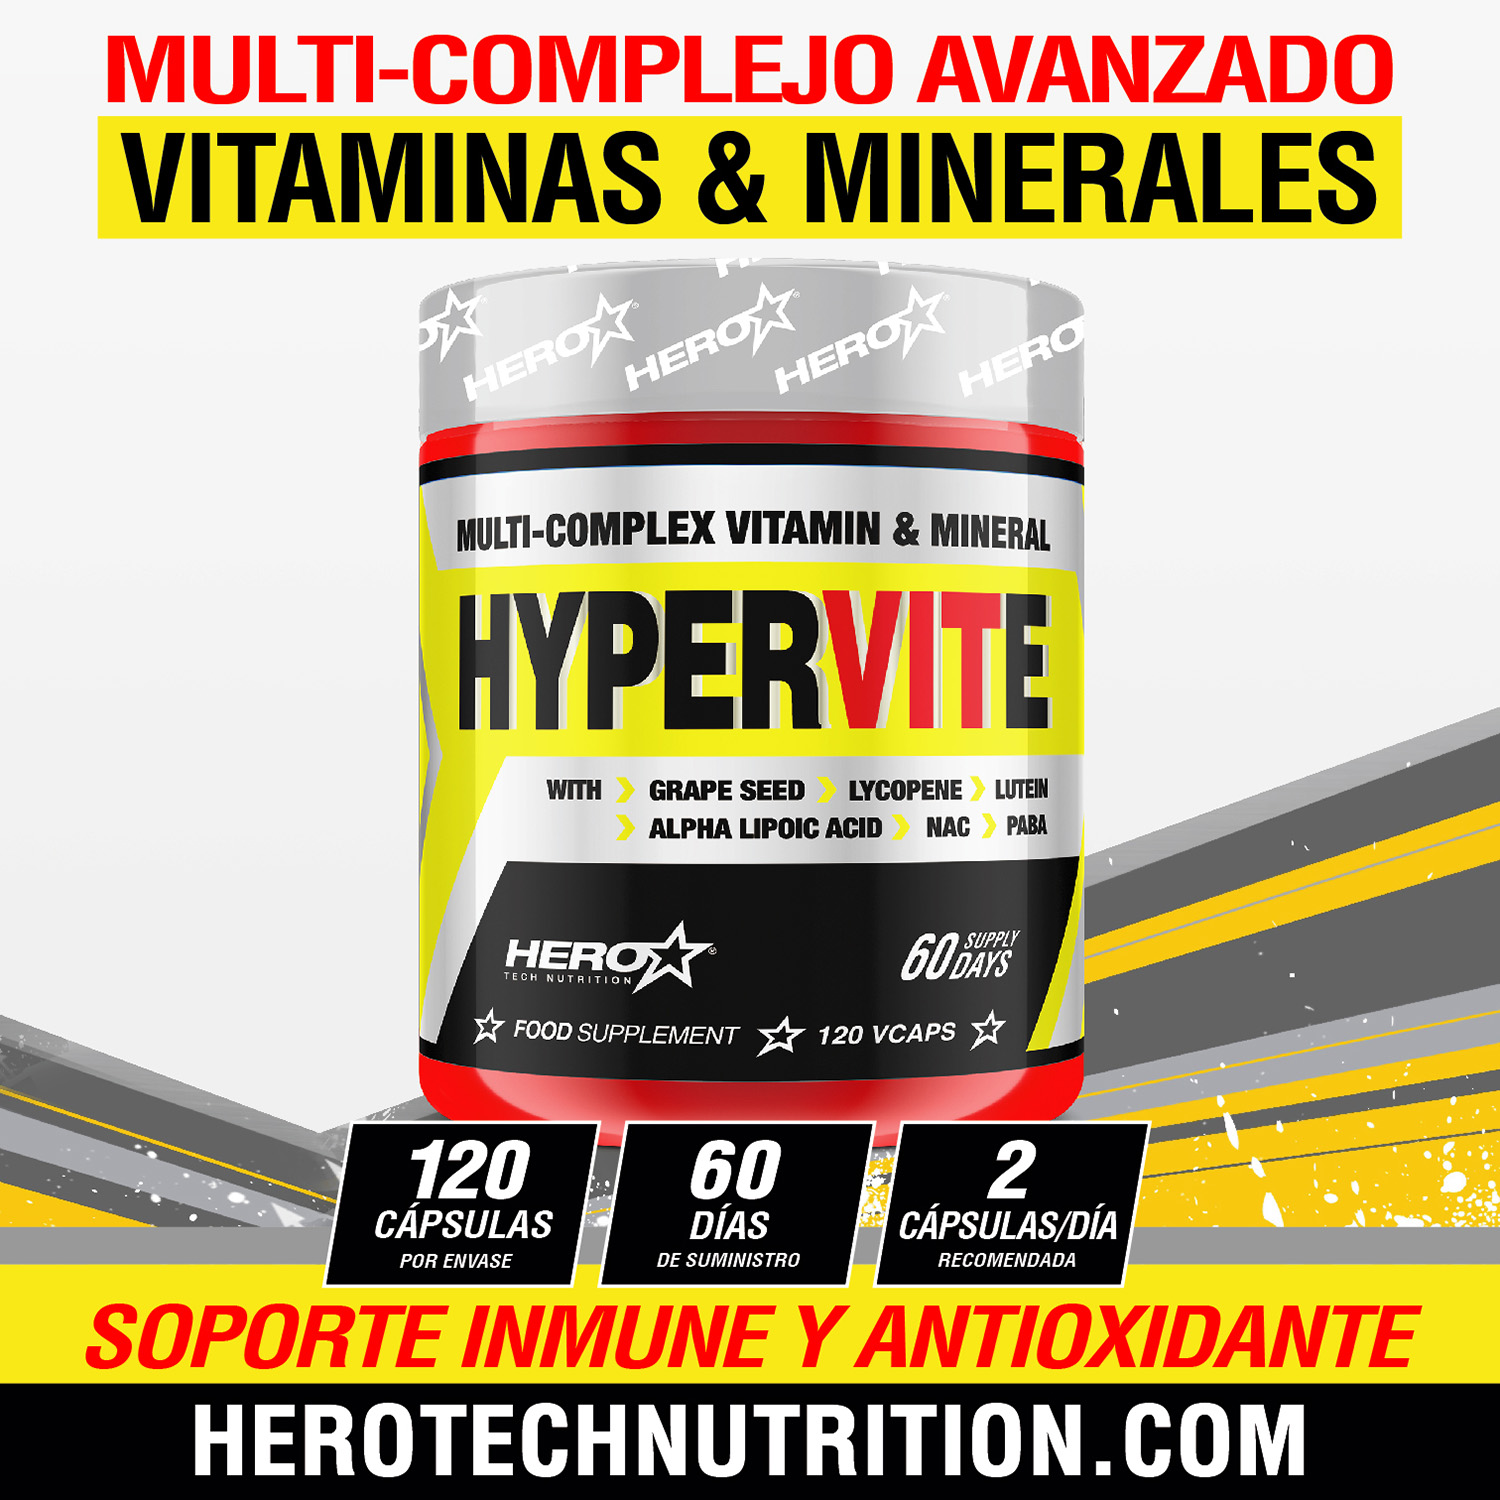 HYPERVITE MULTI VITAMINAS Y MINERALES - HERO TECH NUTRITION herotechnutrition.com